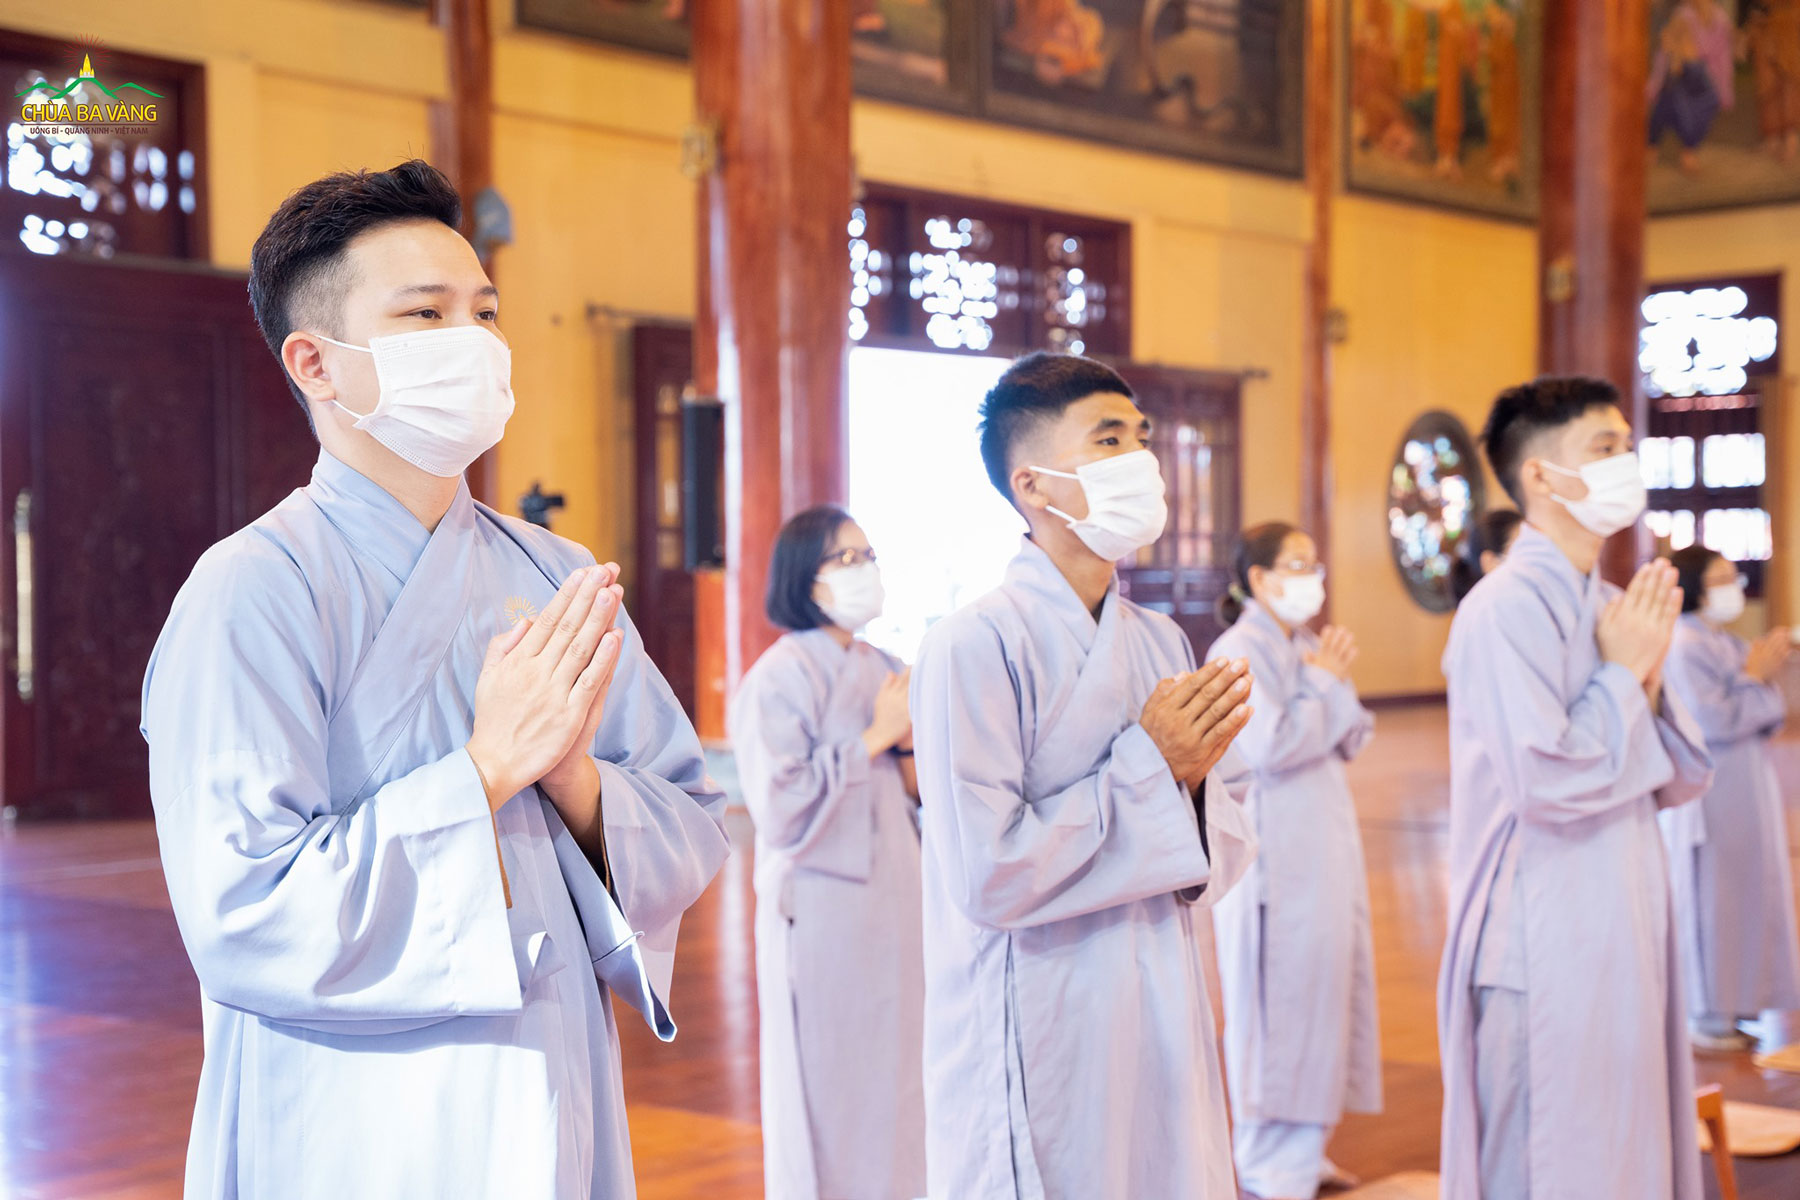 Phật tử đang tu học cấm túc tại chùa tham dự buổi lễ tụng kinh